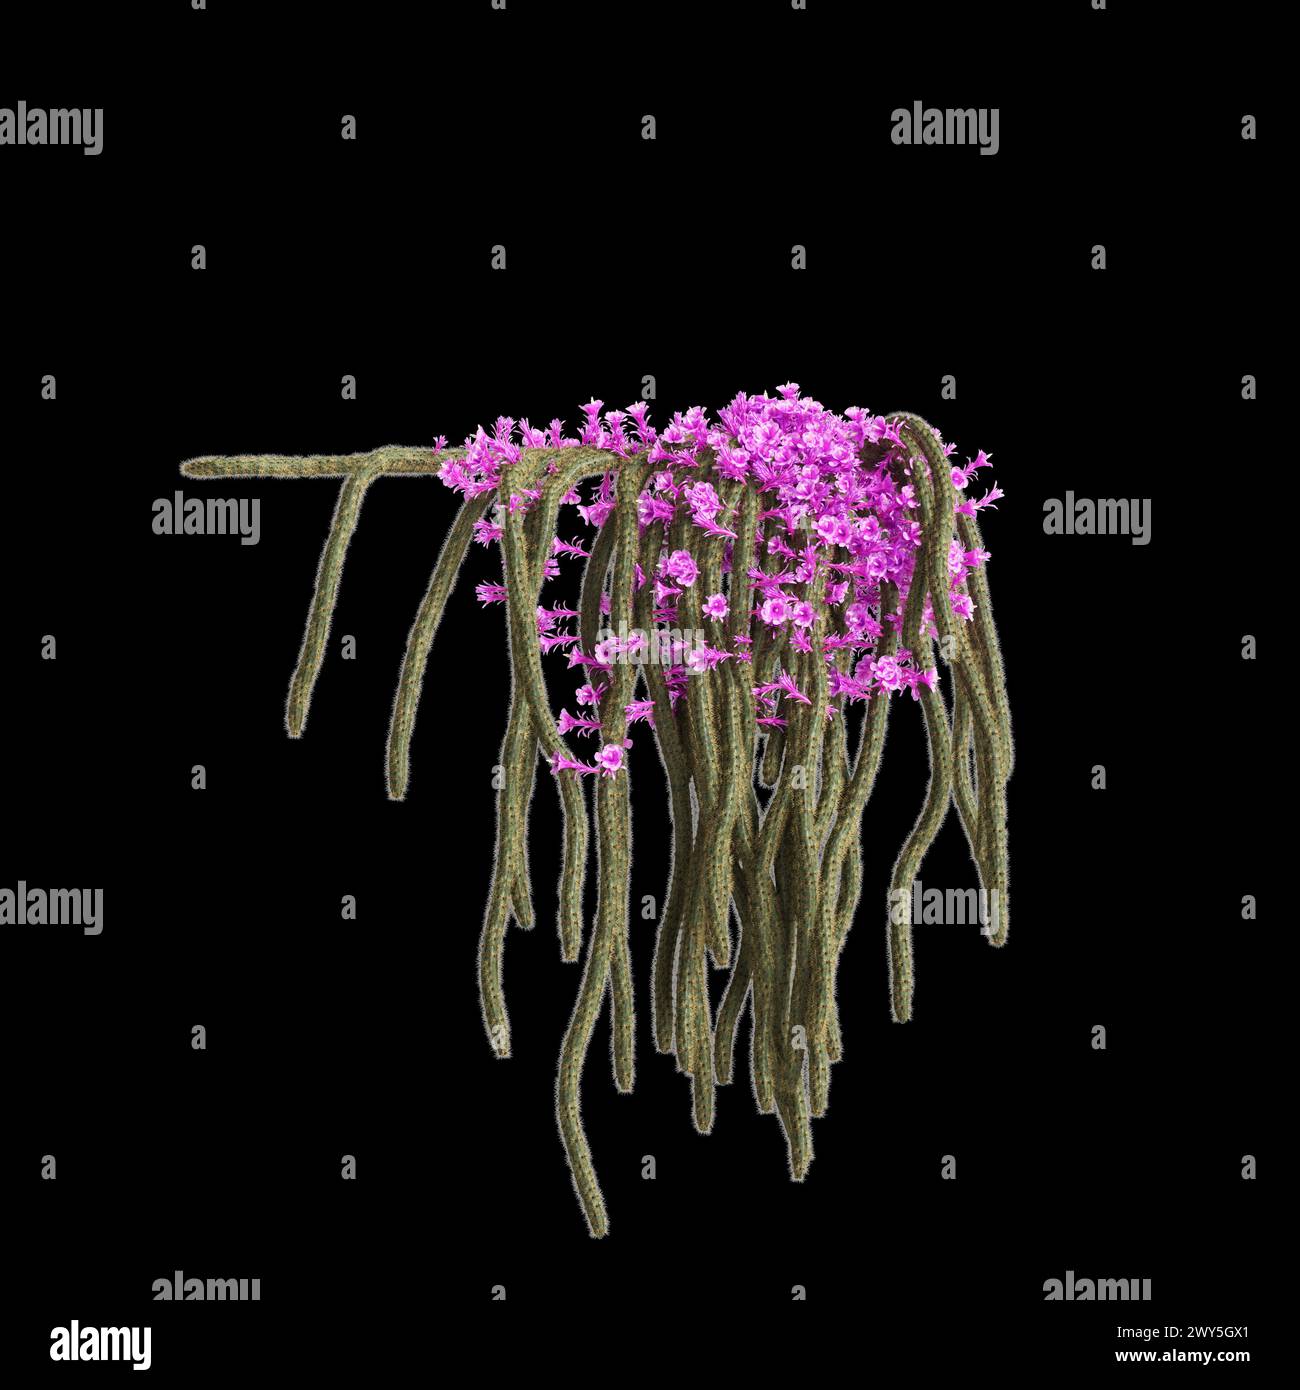 3d illustration of Aporocactus flagelliformis hanging plant isolated on black background Stock Photo